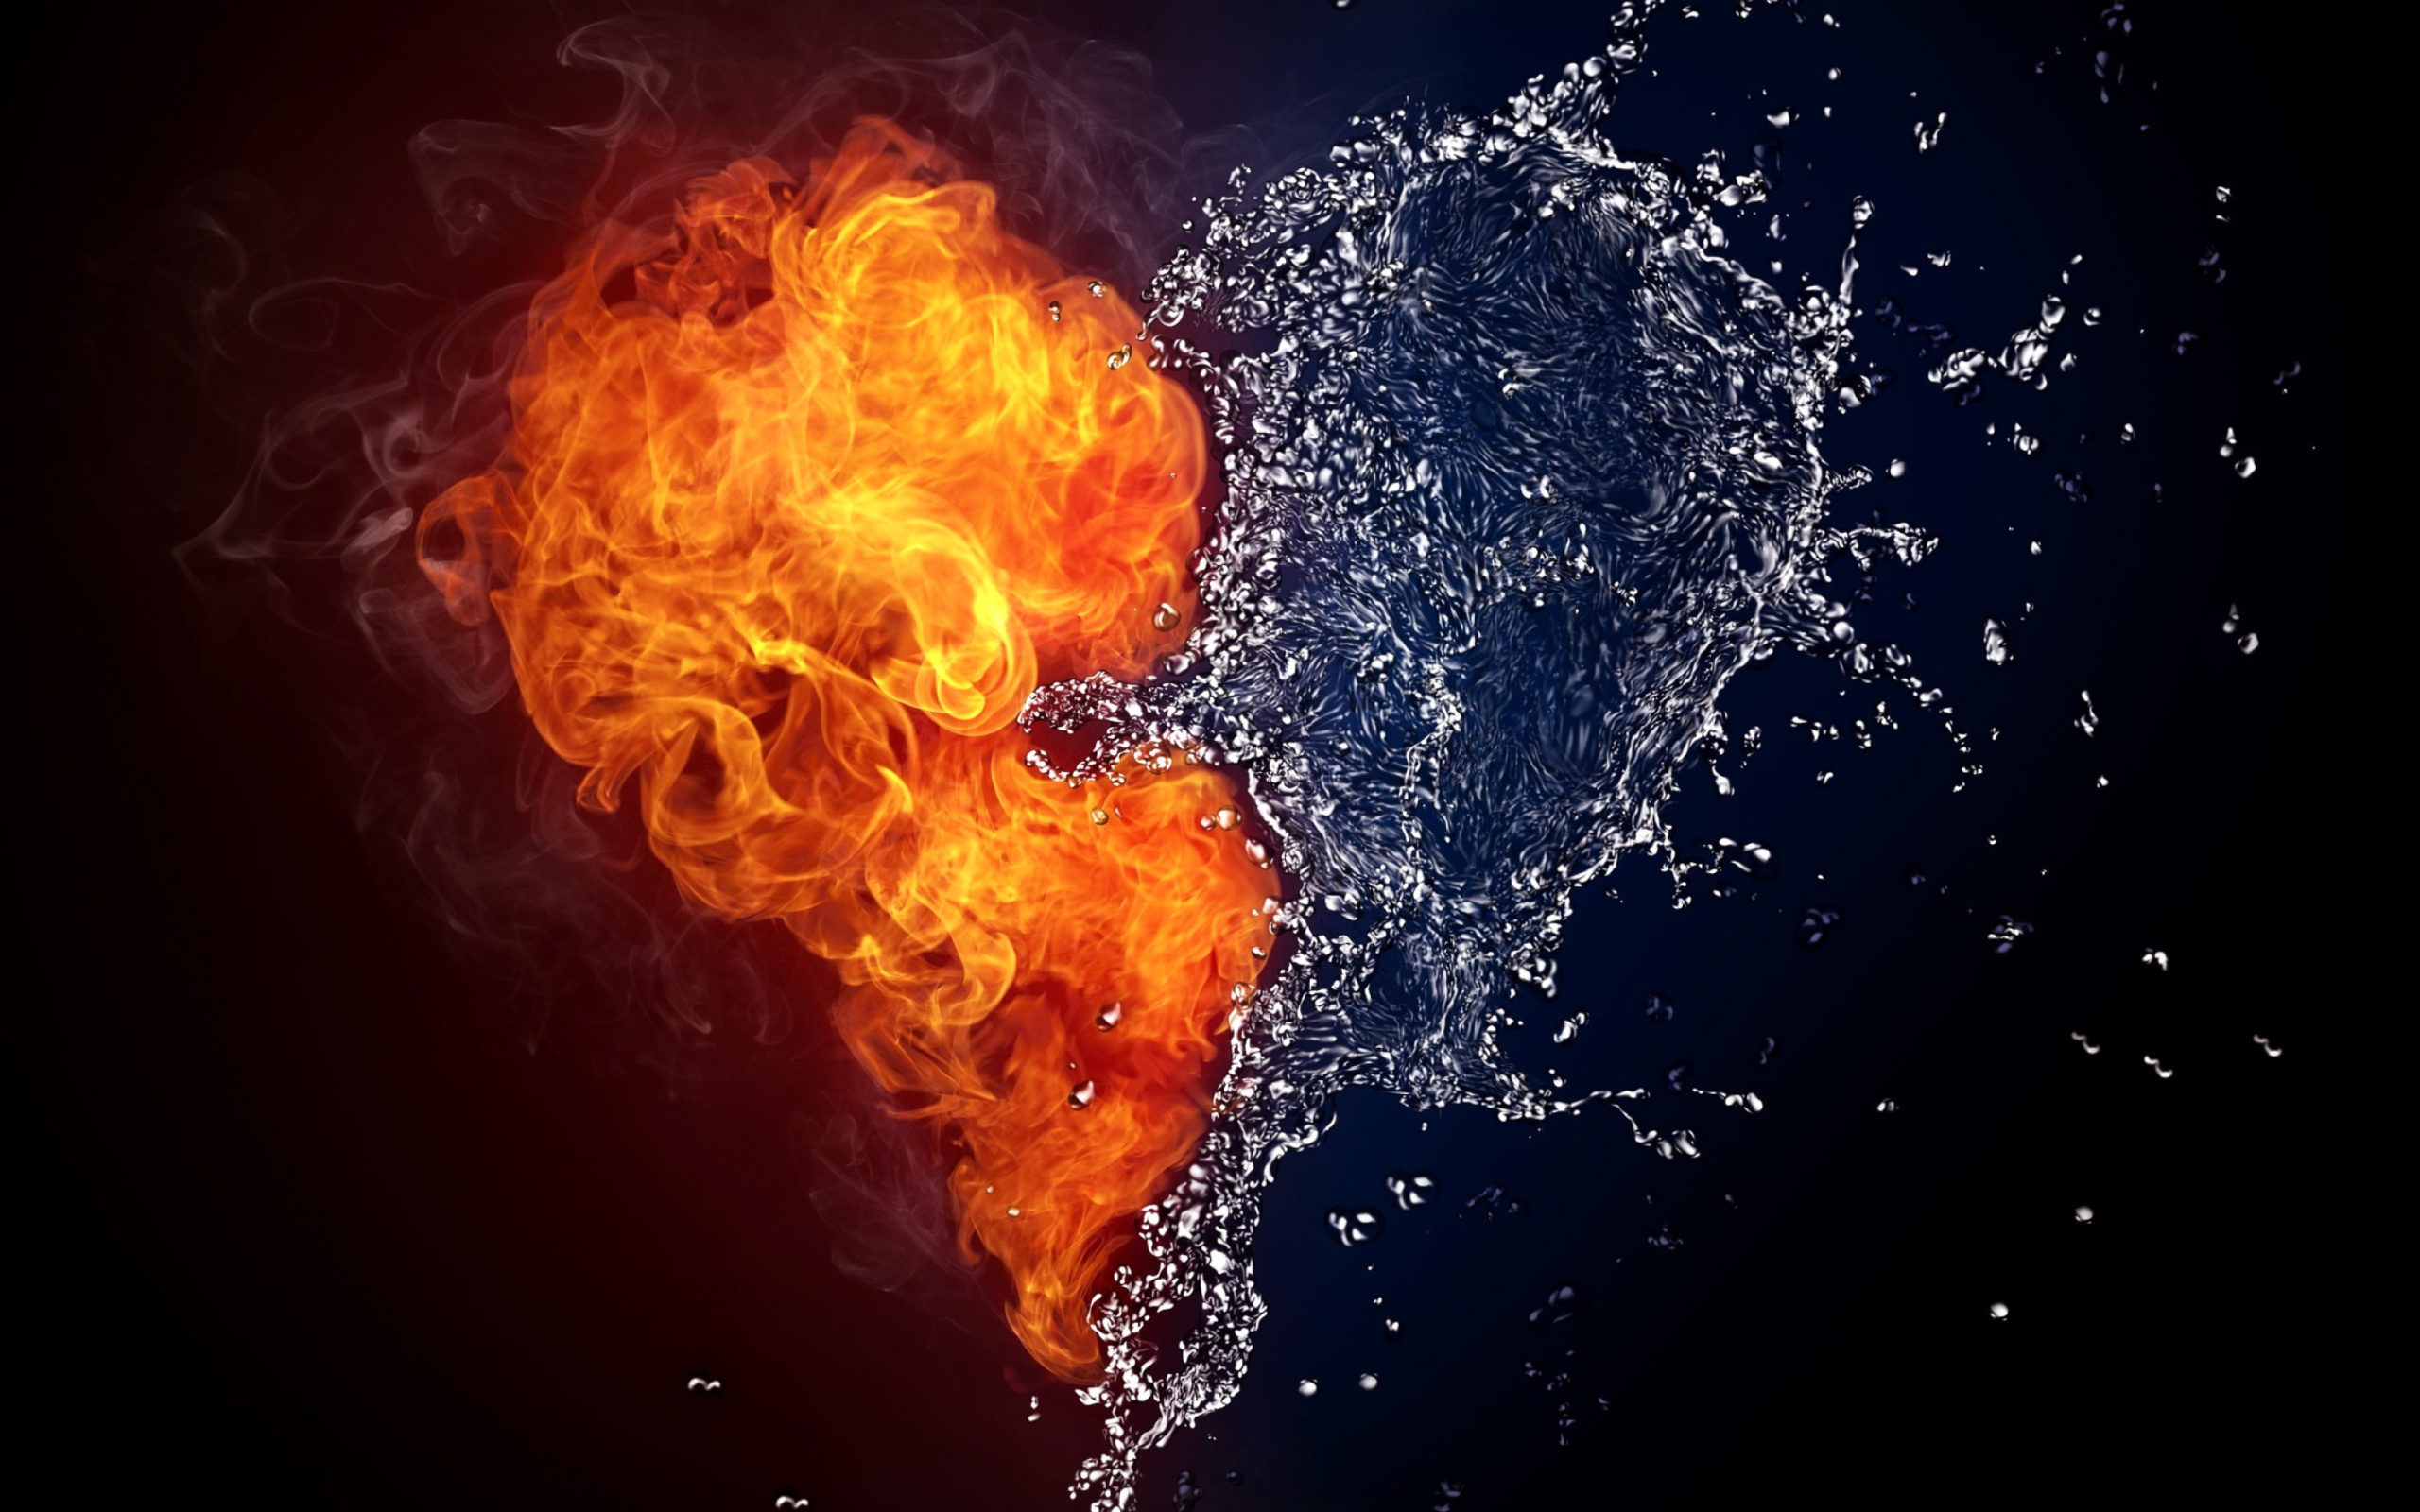 Das Water and Fire Heart Wallpaper 2560x1600